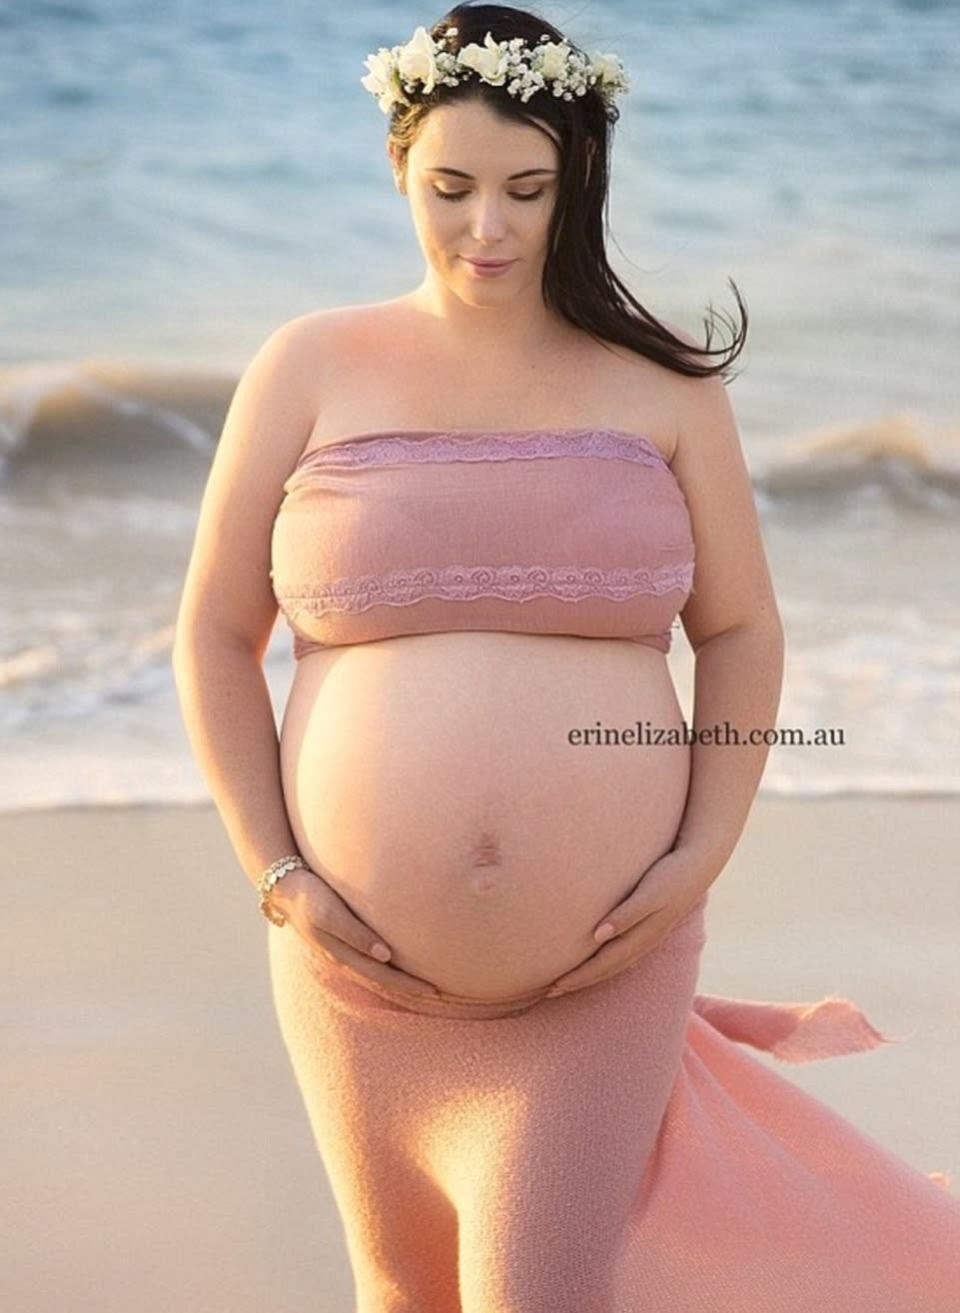 La otra producción que se volvió viral. Durante el embarazo, Erin Elizabeth también fotografió en una playa paradisíaca a Kimberly, con su enorme panza. Rápidamente, estas fotos dieron la vuelta al mundo, al igual que sucede ahora con las de los cinco bebés.